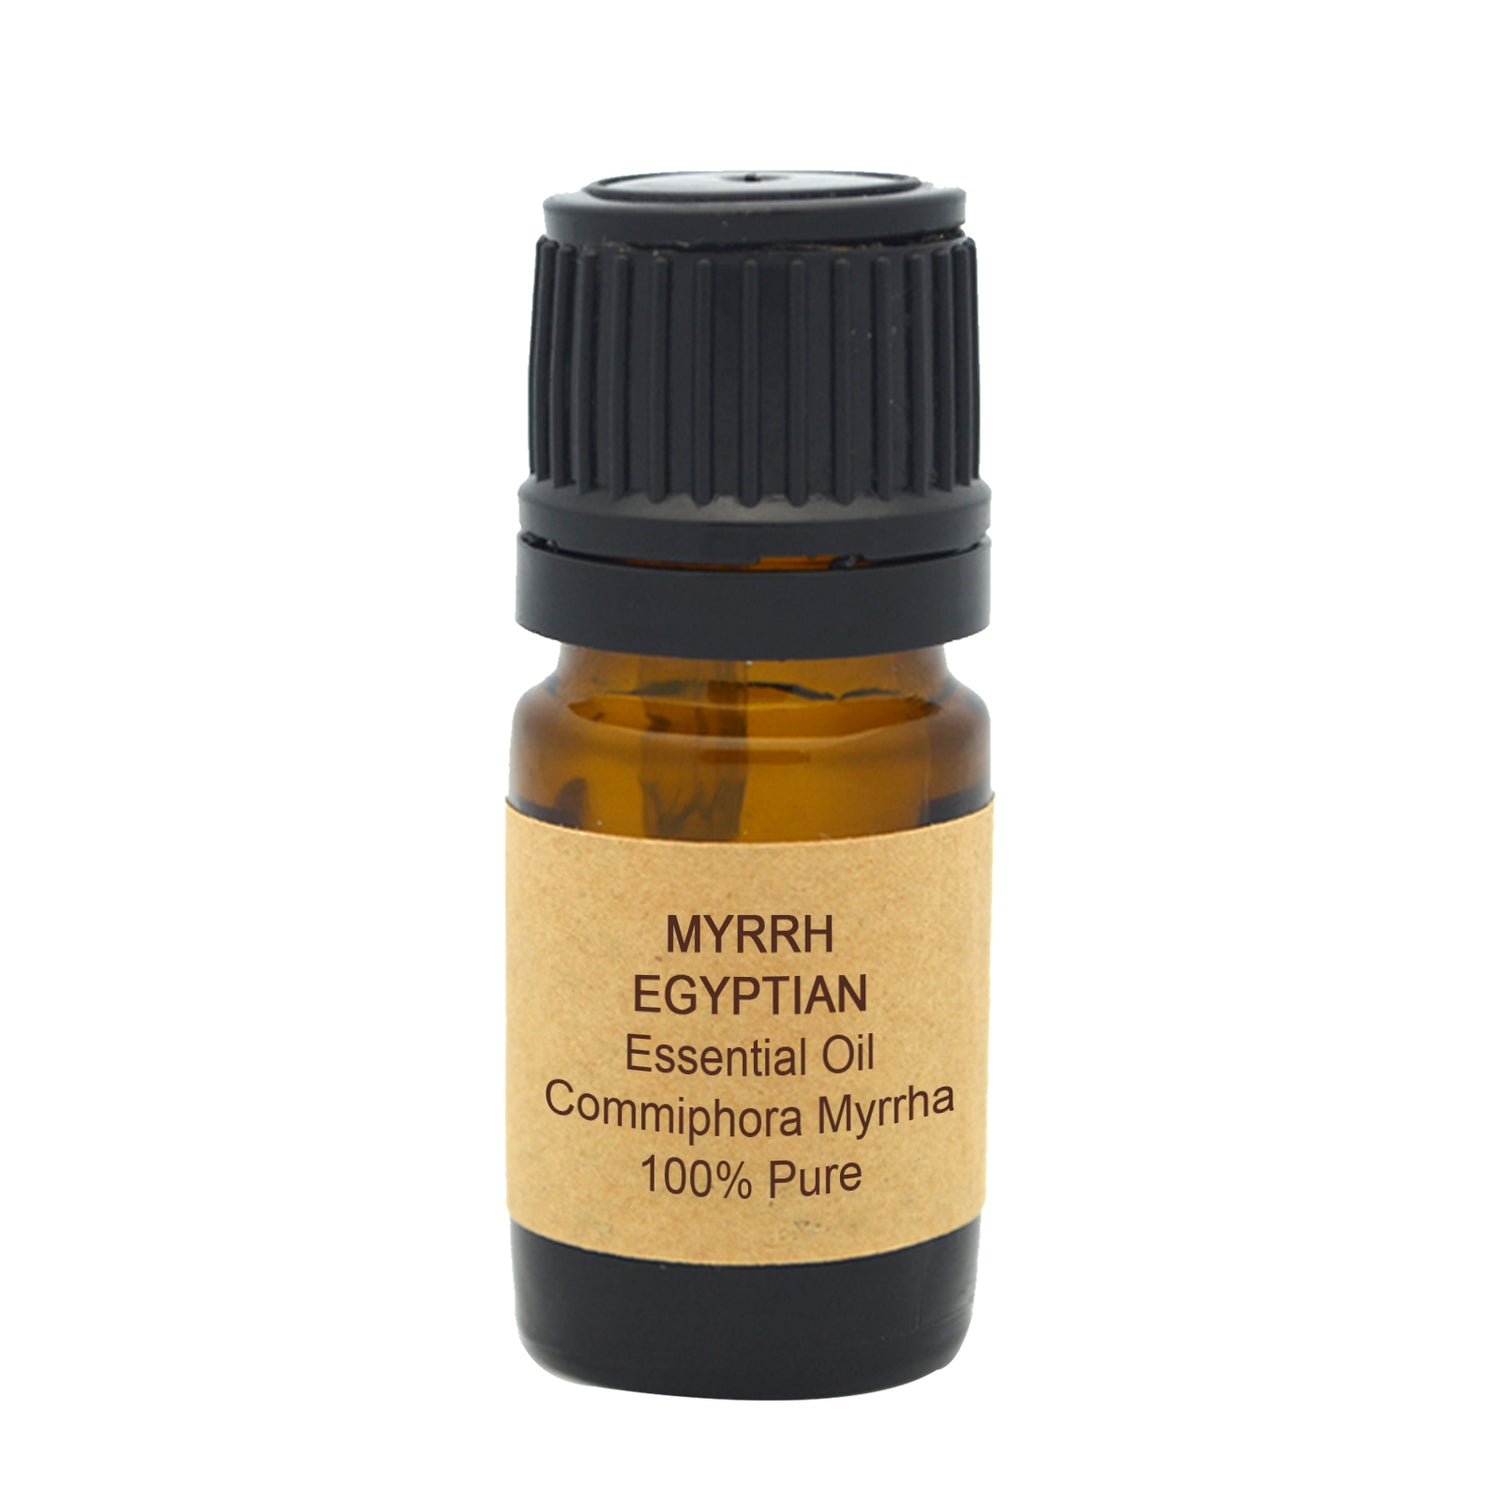 Myrrh Egyptian Essential